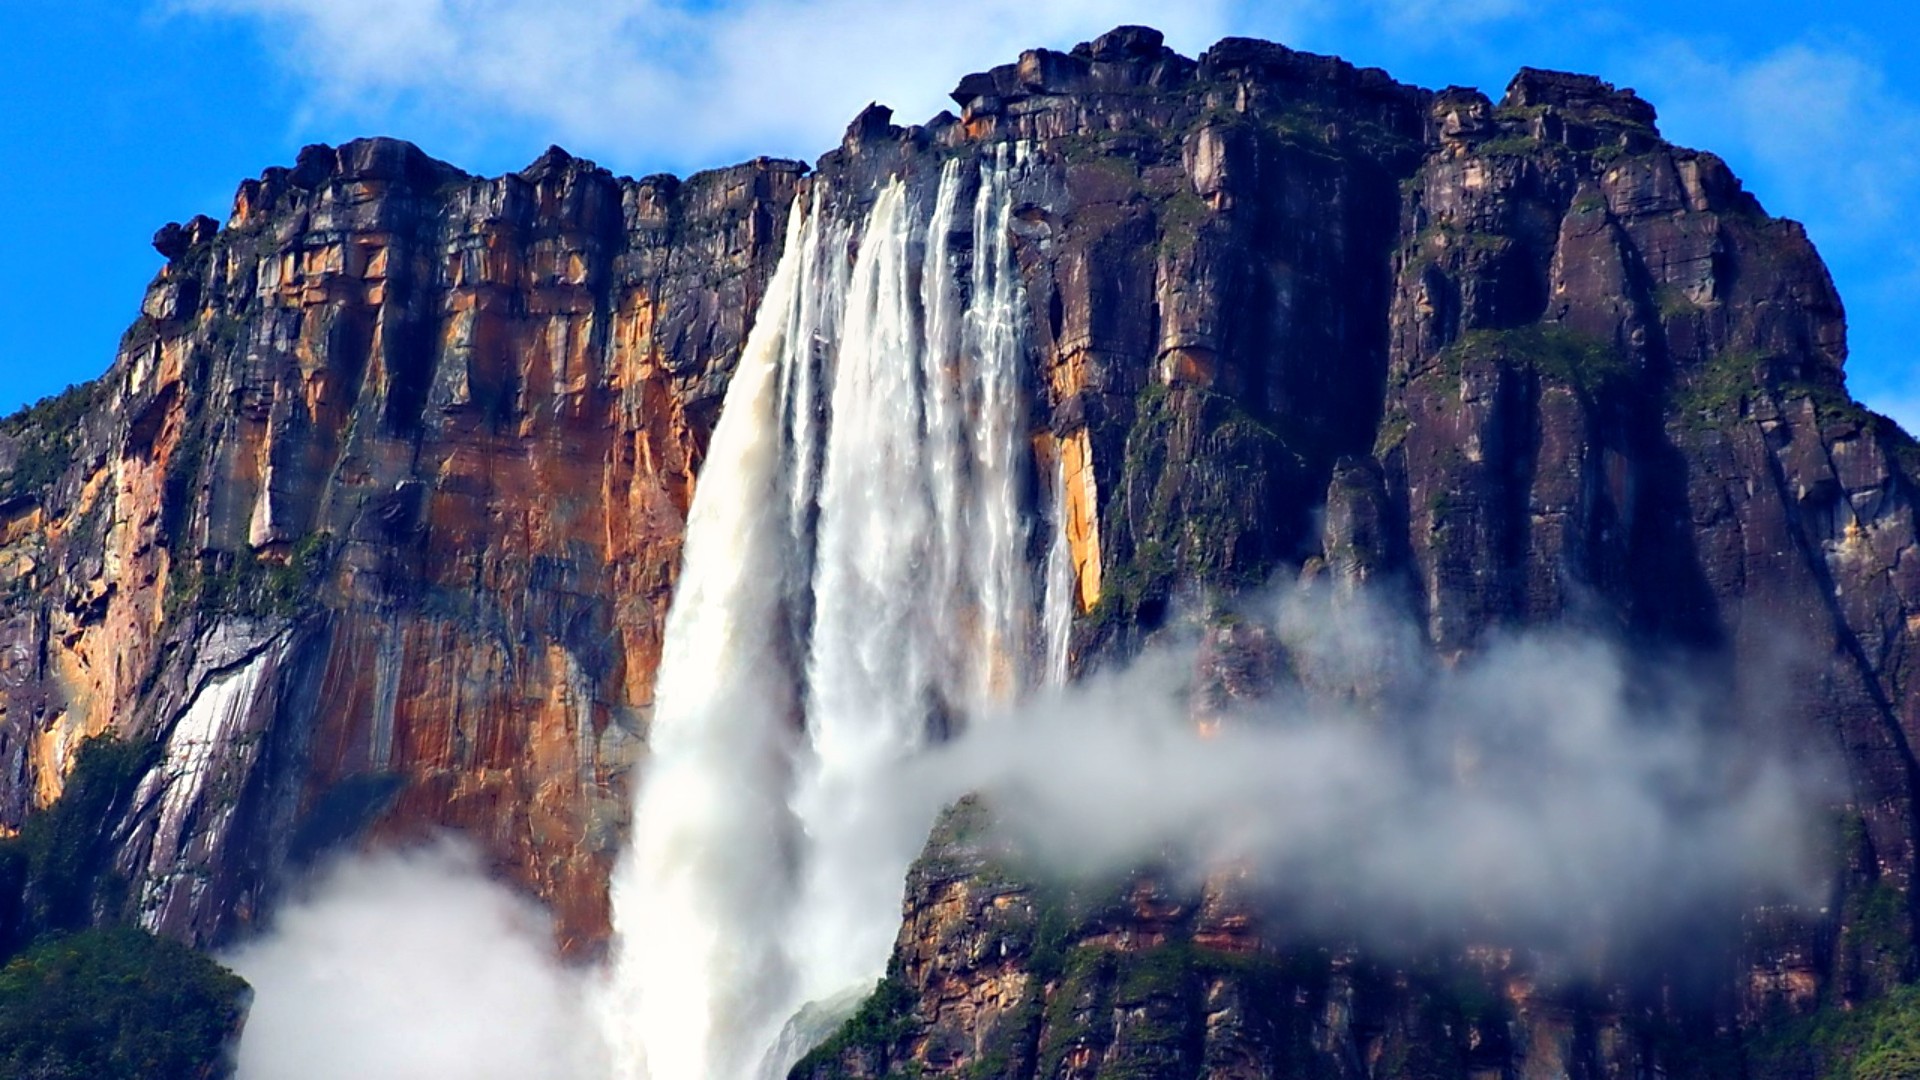 Earth Waterfall Rock Angel Falls Venezuela 1920x1080